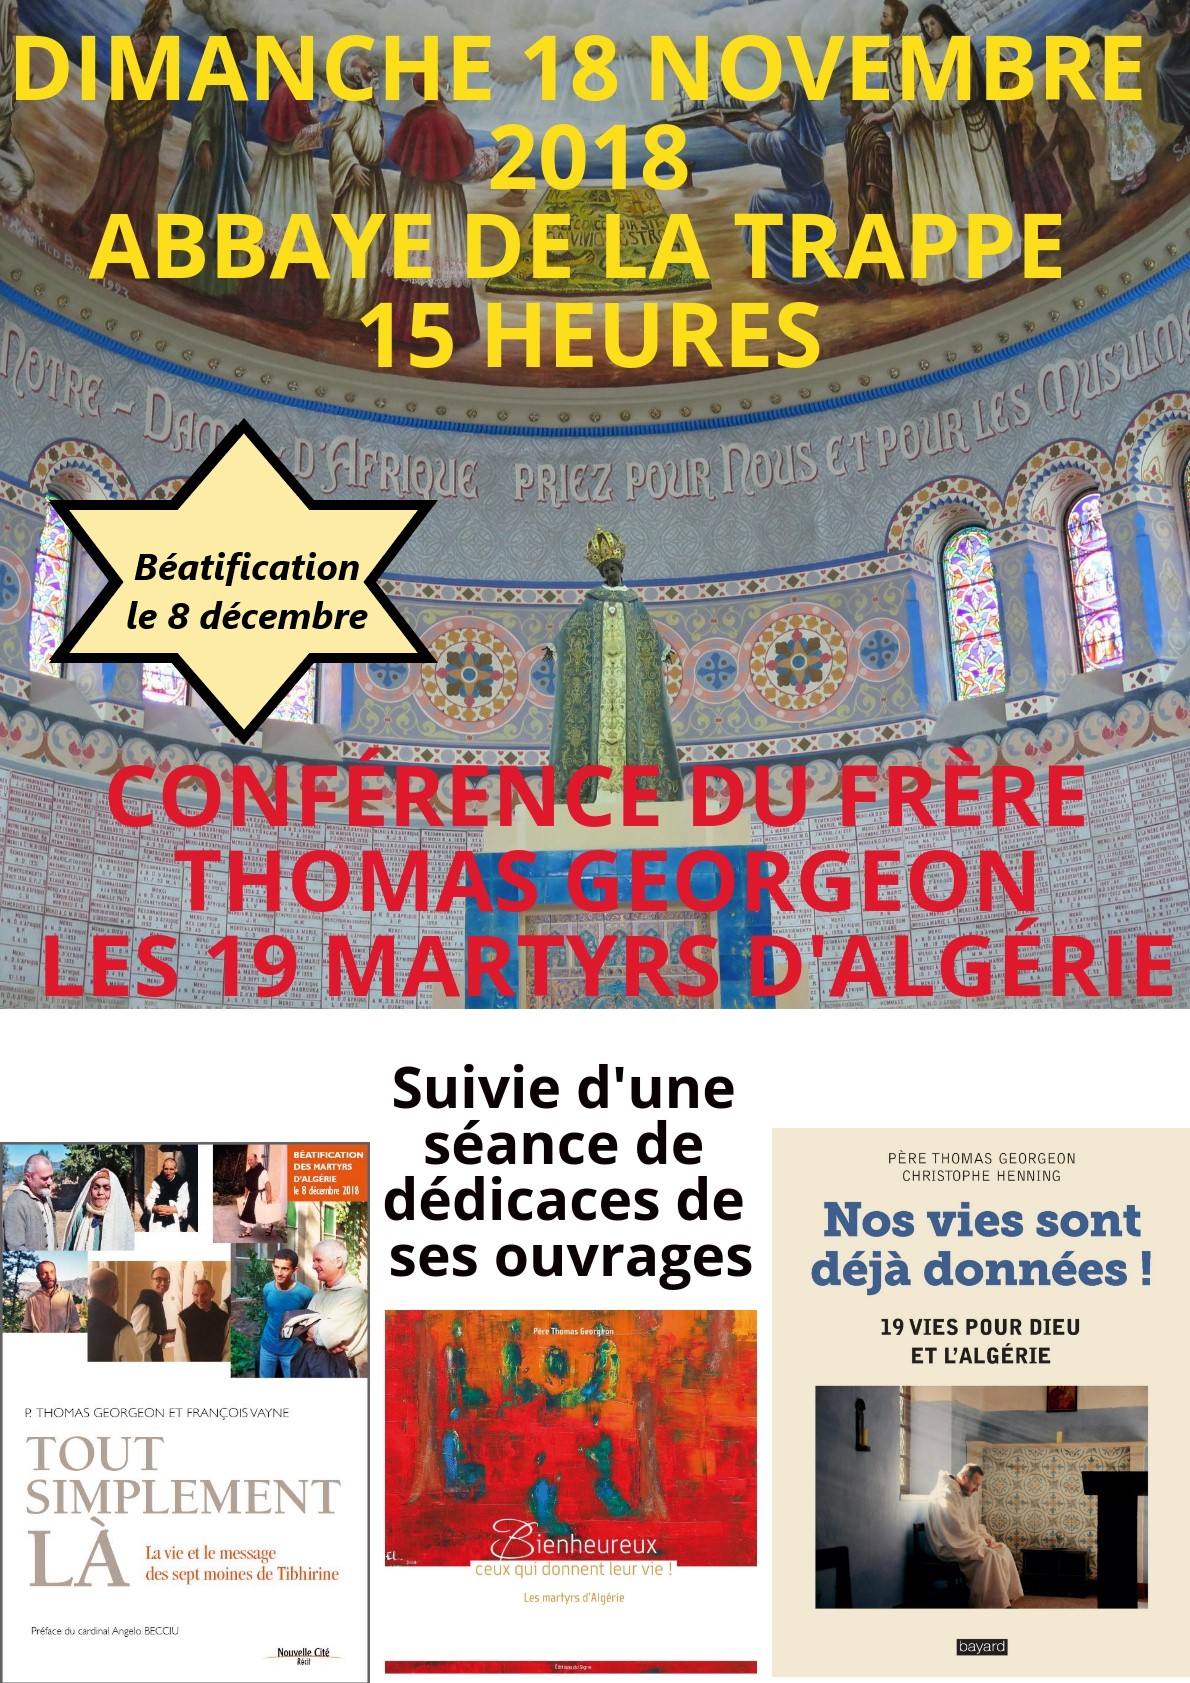 Conférence sur les martyrs d’Algérie le 18 novembre 2018 à l’Abbaye de la Trappe (61)